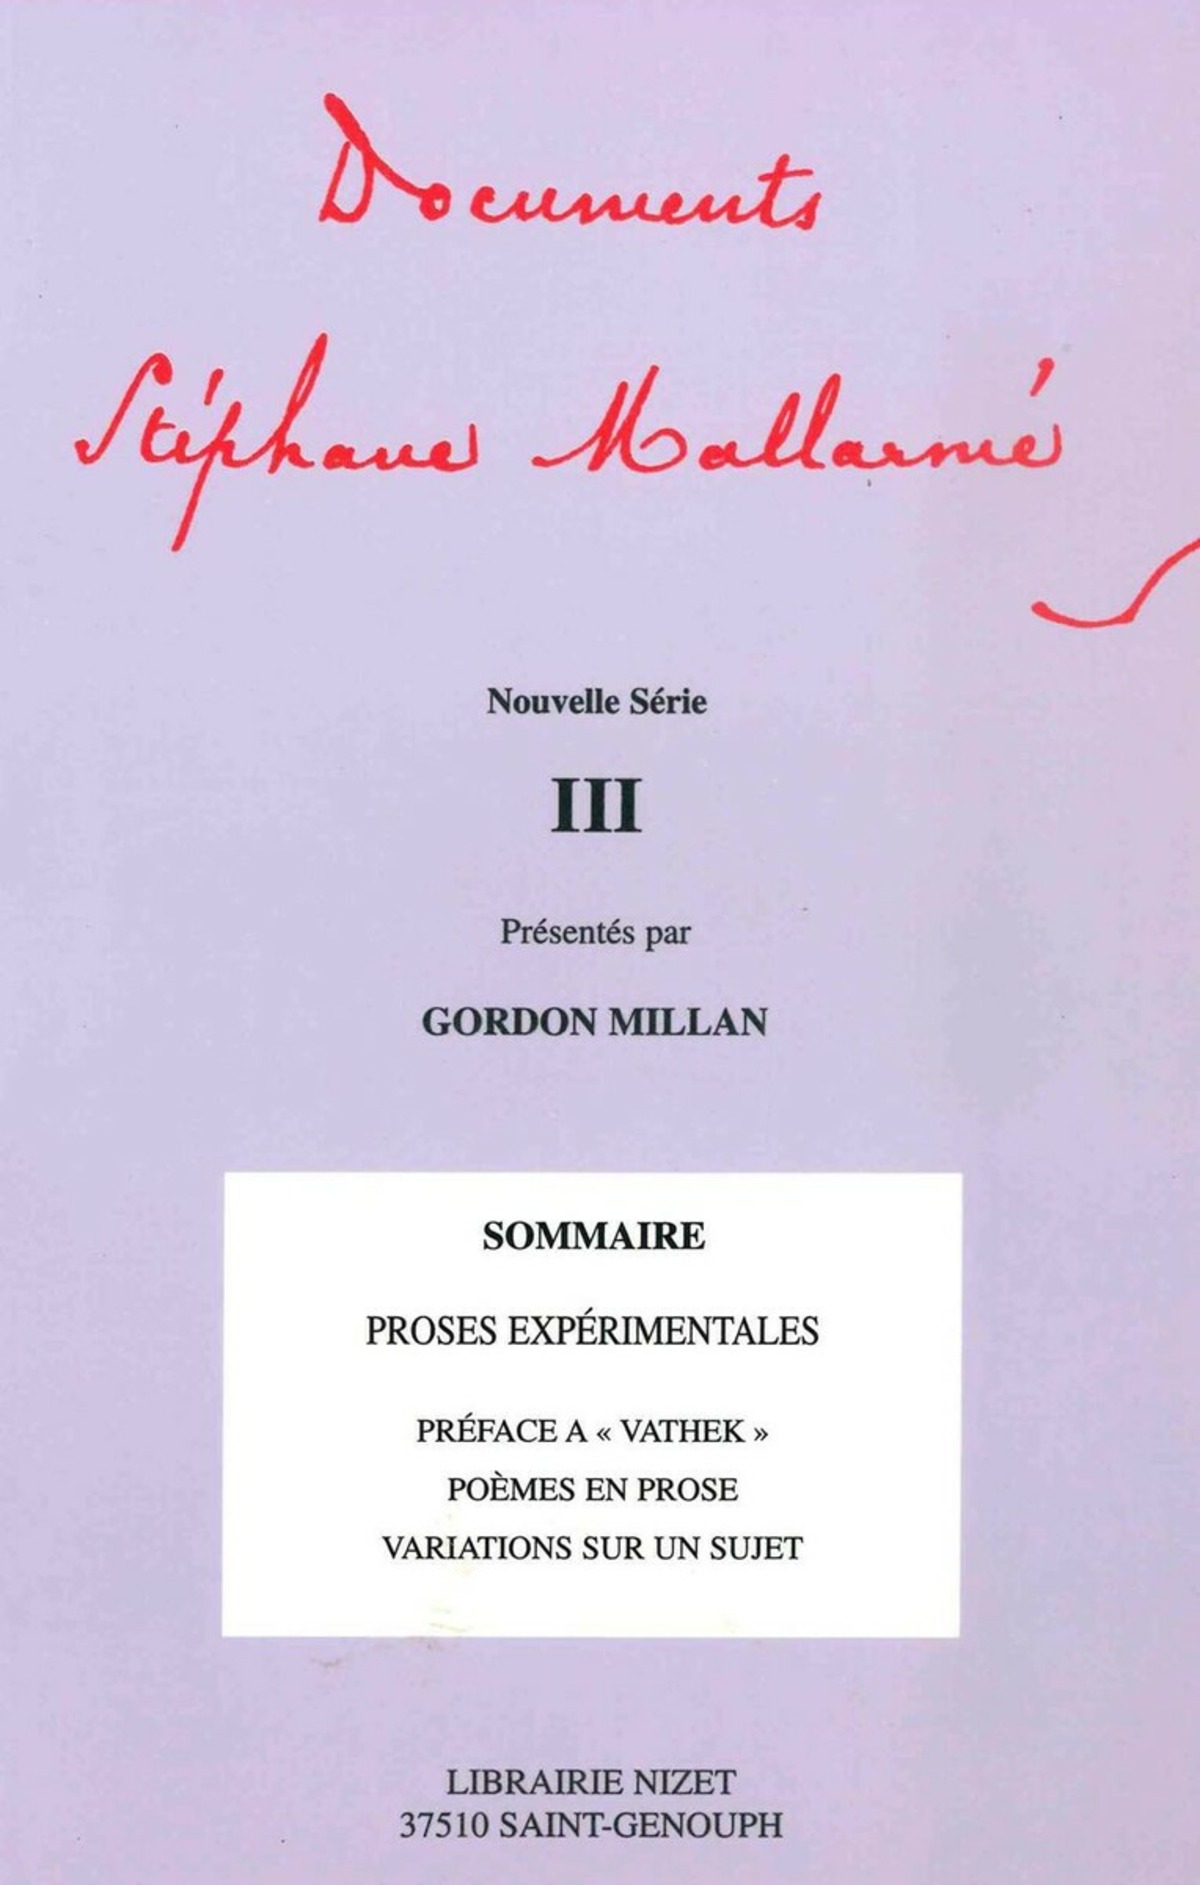 Documents Stéphane Mallarmé - Nouvelle série III